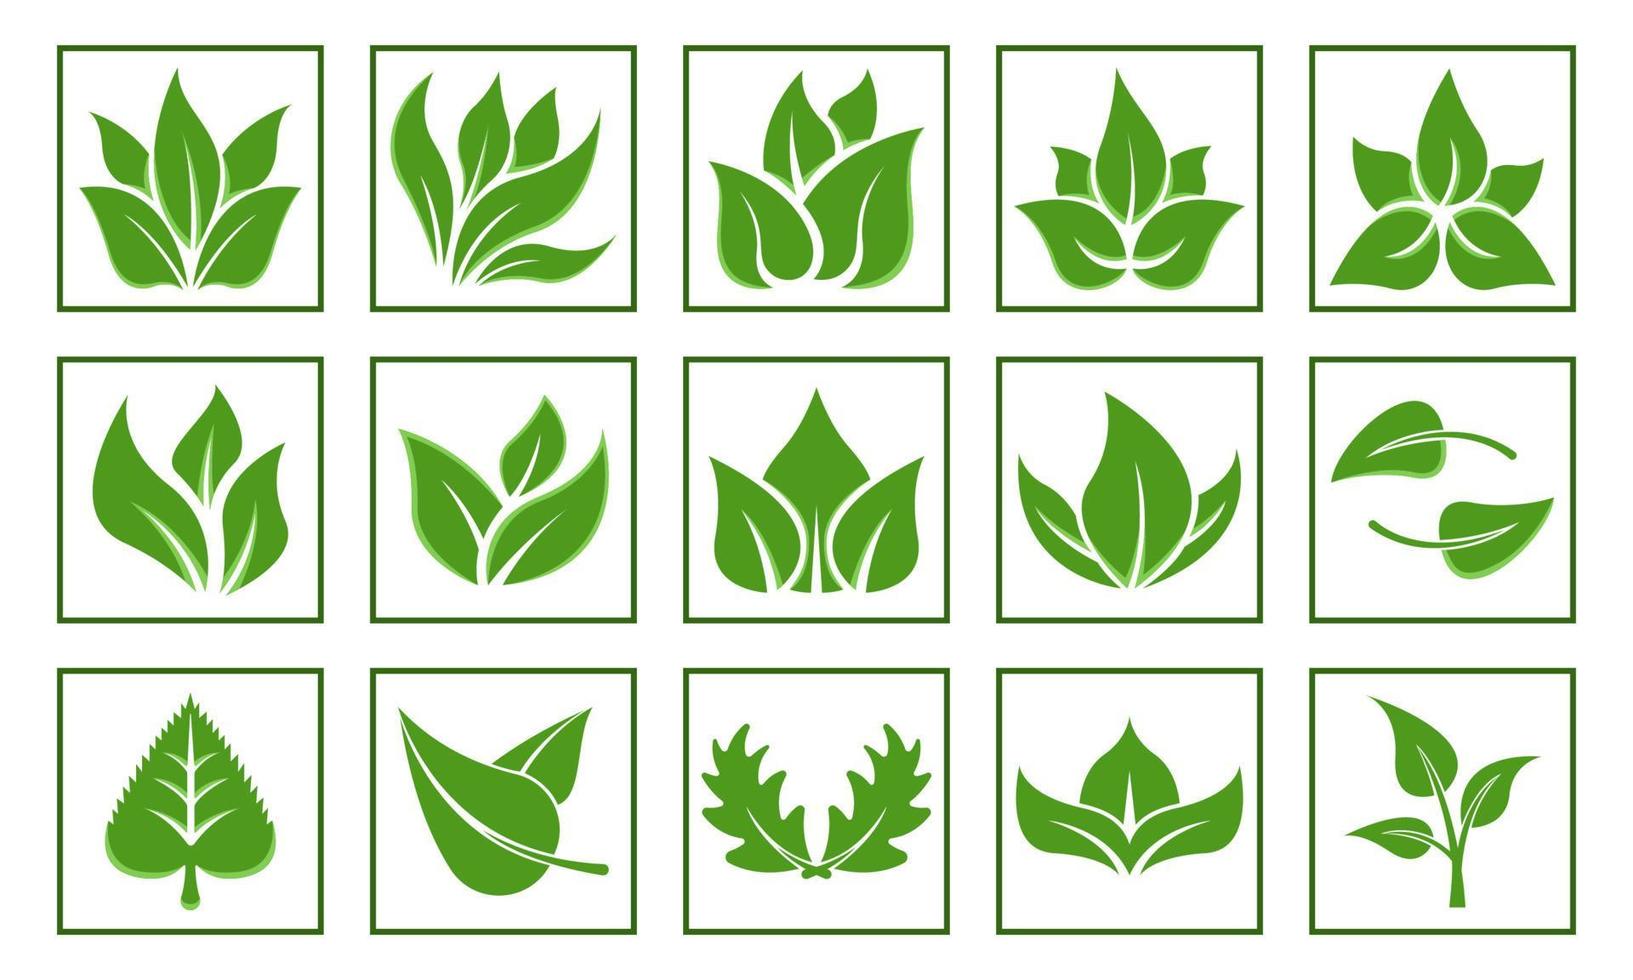 définir le style de dessin animé plat logo feuilles vertes vecteur